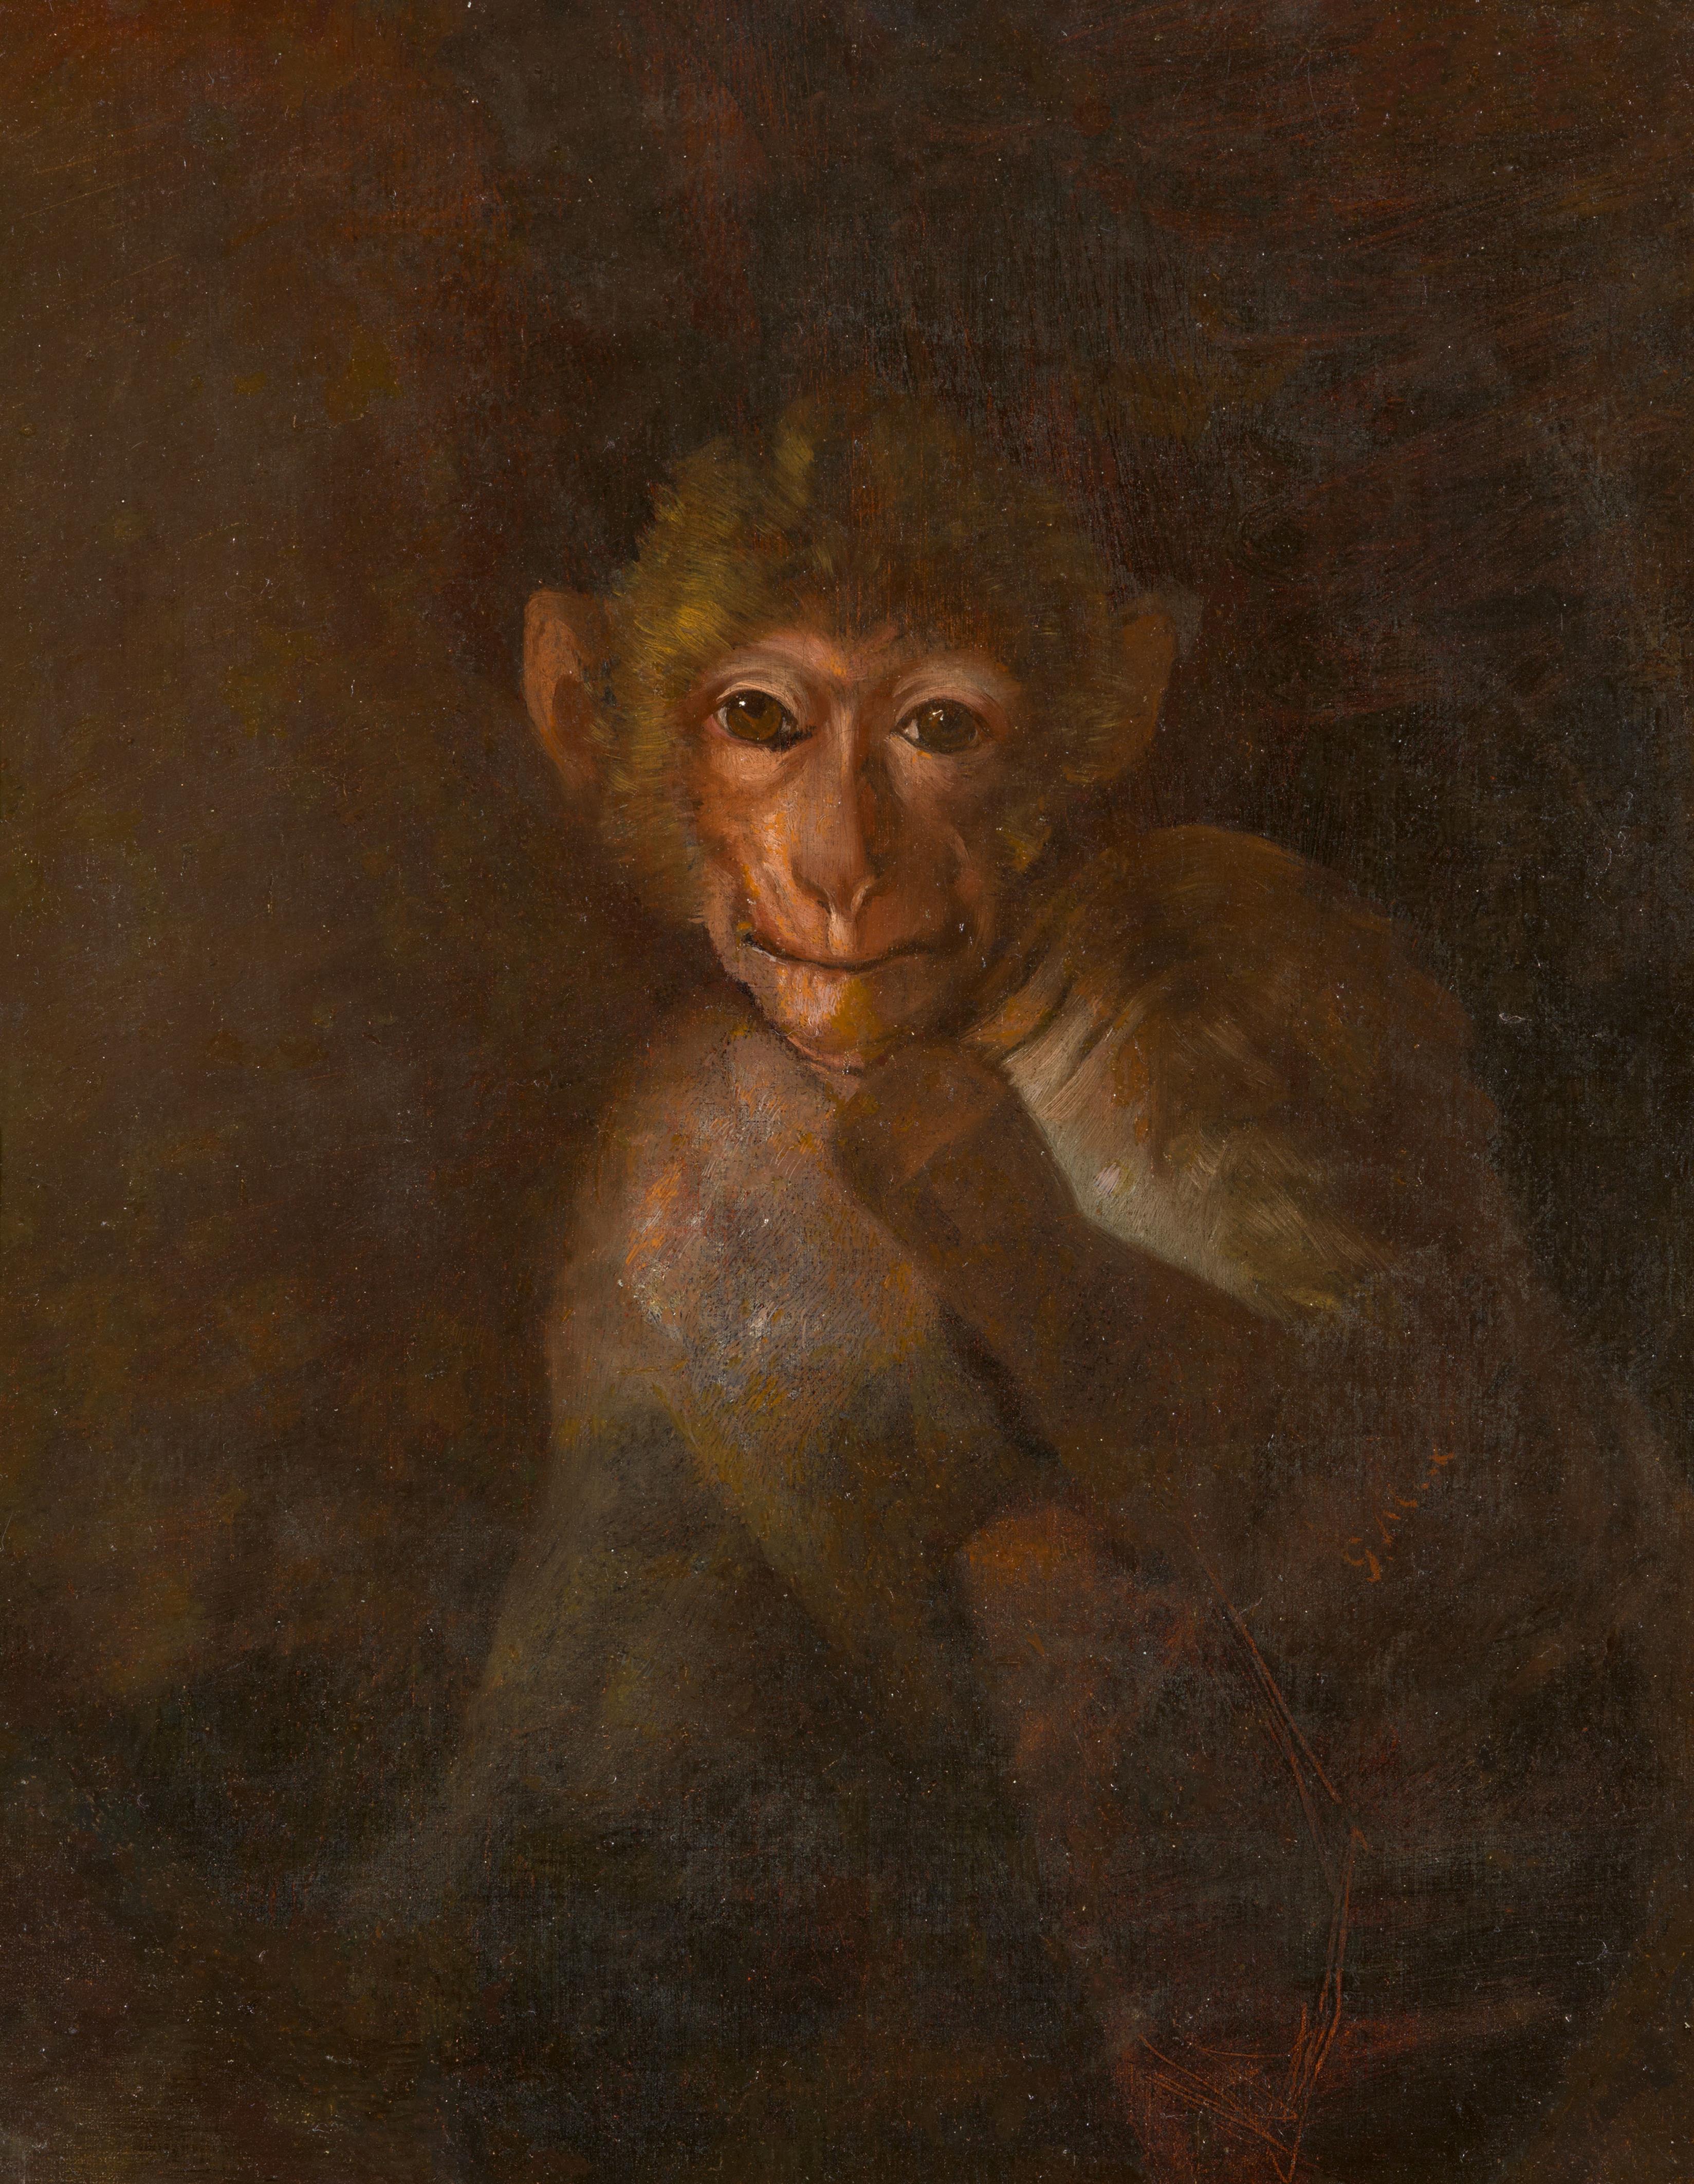 Gabriel von Max - Ein kleiner Affe aus dem Bild schauend - image-1